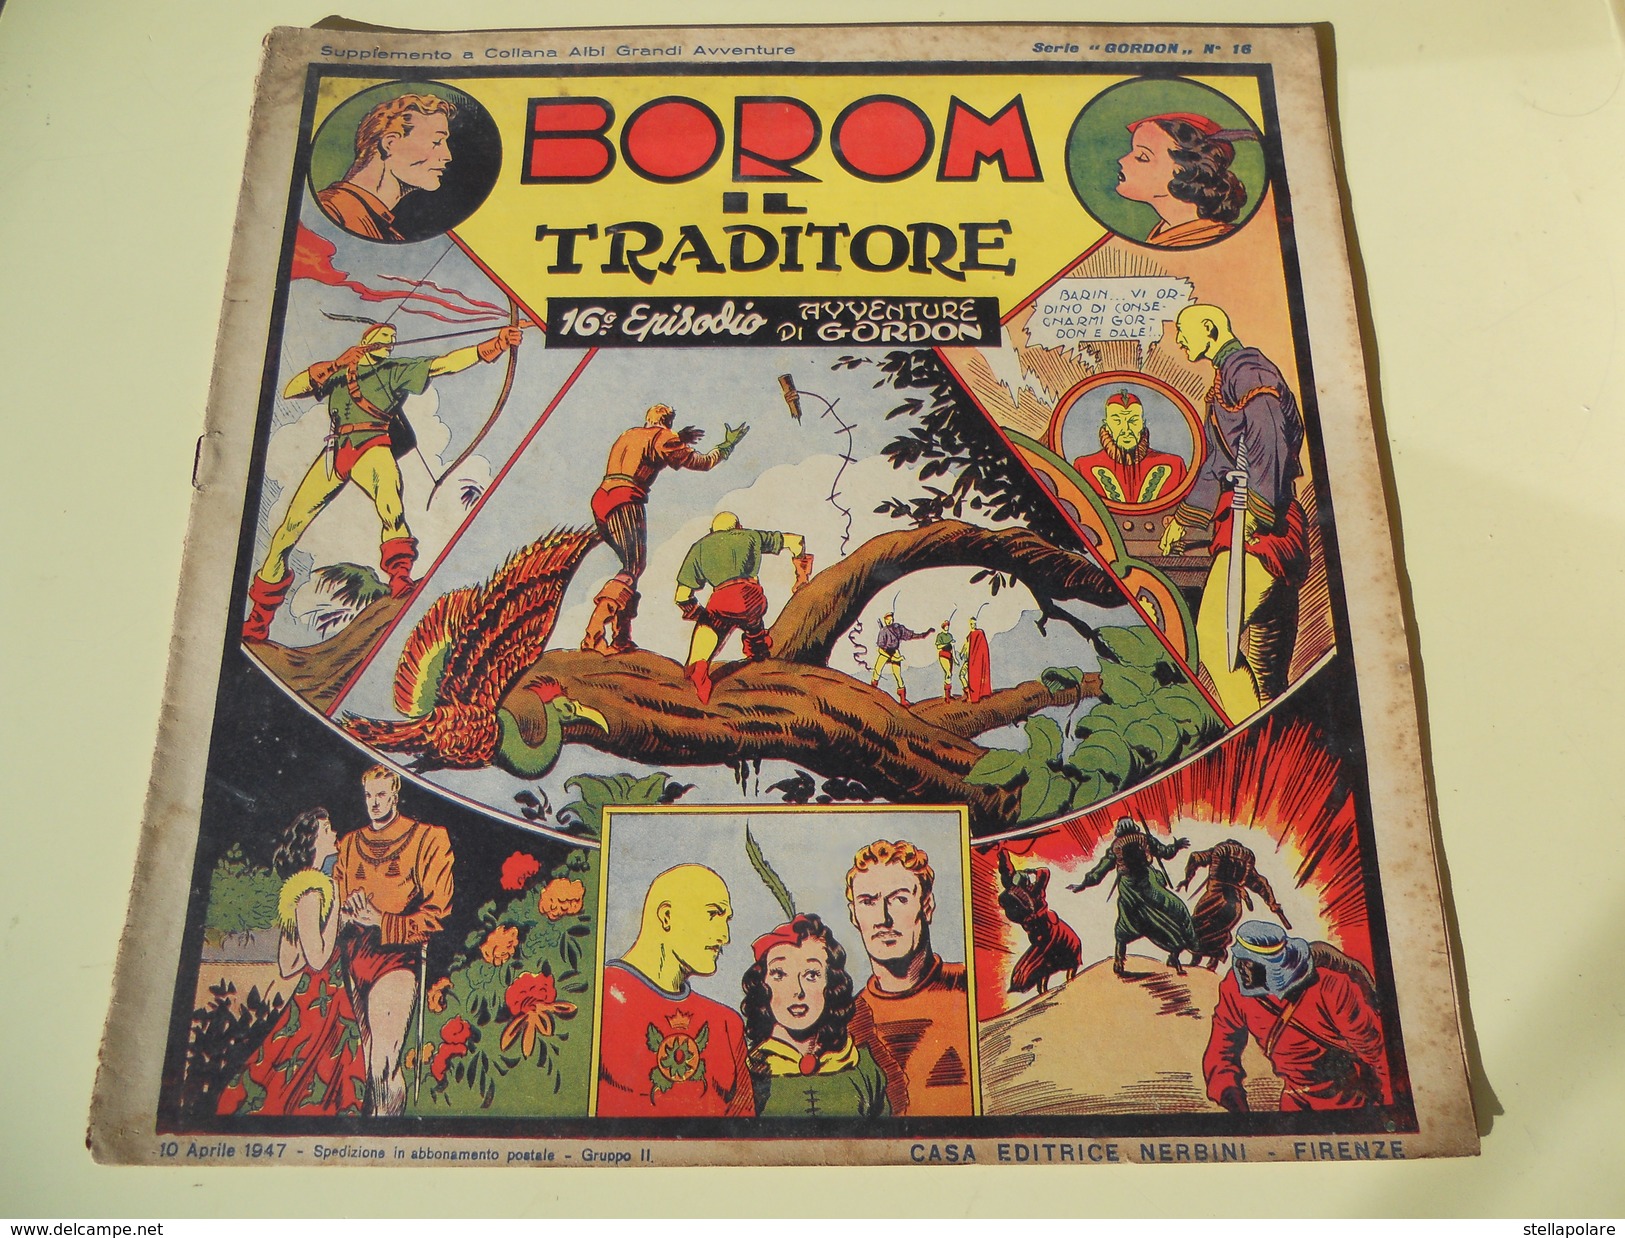 NERBINI - GRANDI AVVENTURE - SERIE GORDON N. 16 - BOROM IL TRADITORE - 1947 - Clásicos 1930/50